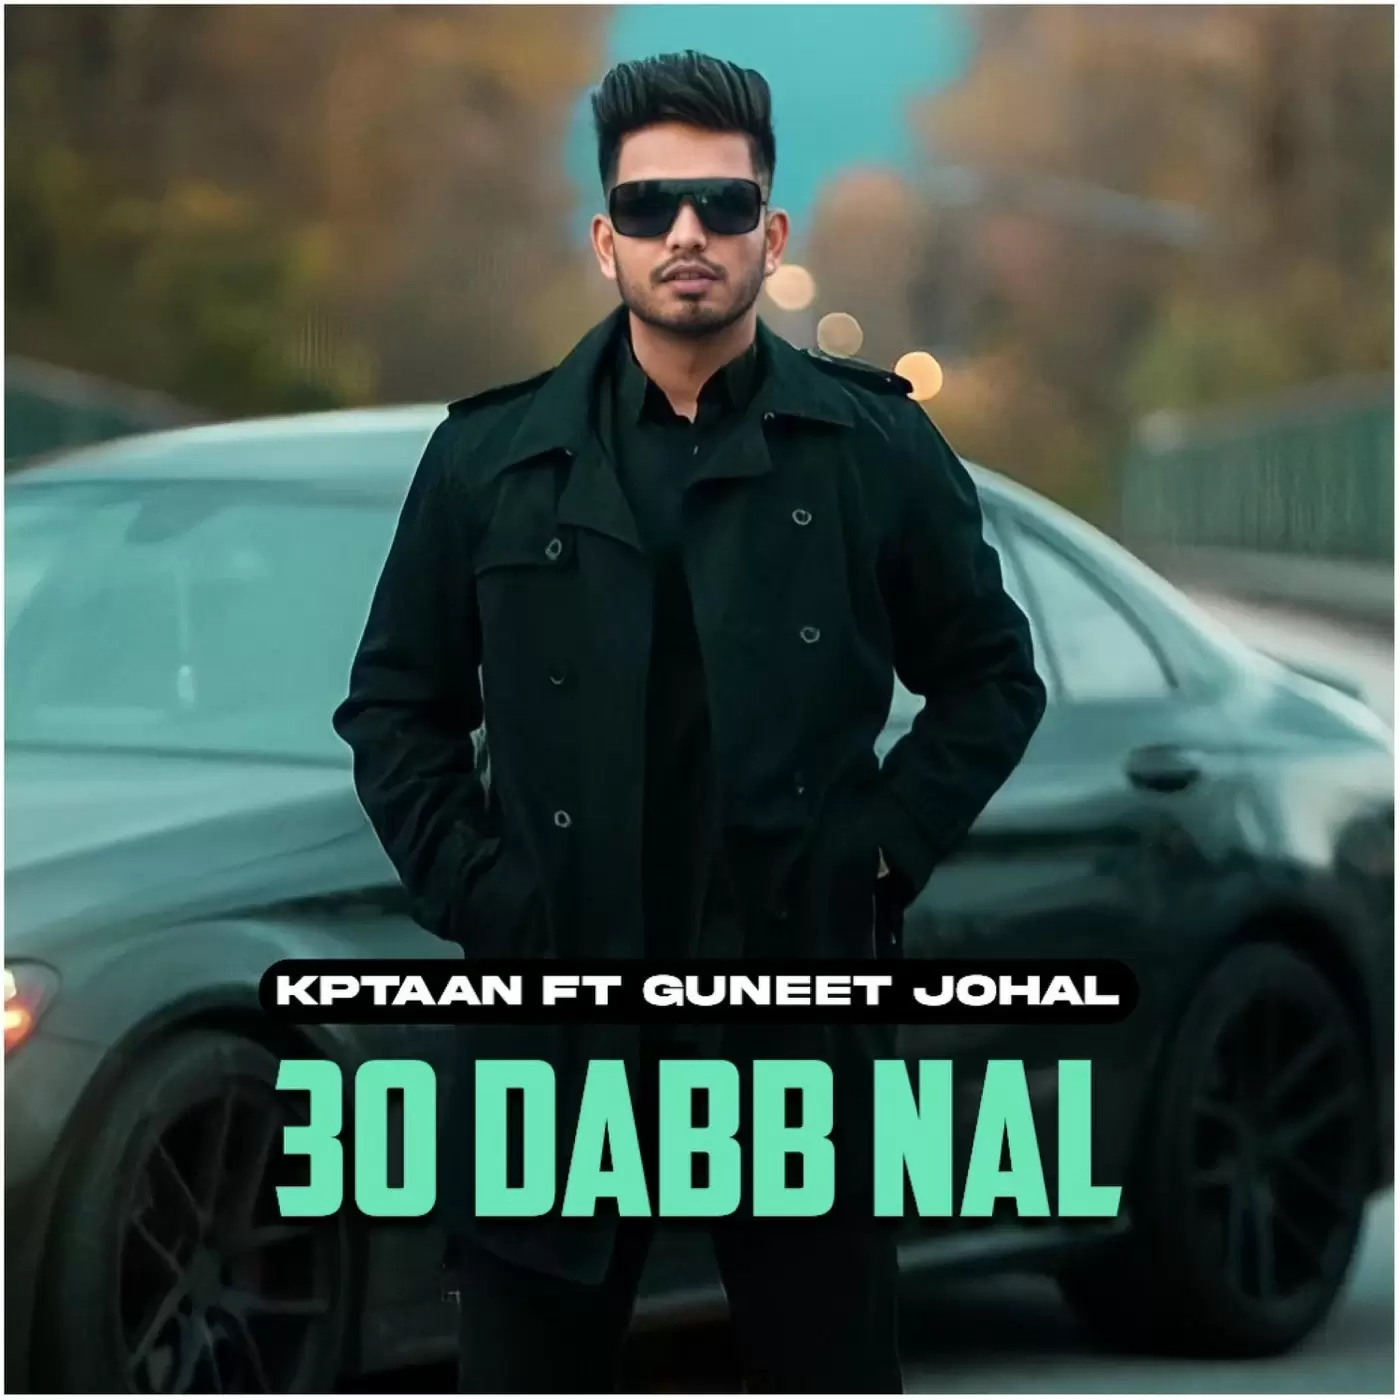 30 Dabb Nal - Single Song by Kptaan - Mr-Punjab